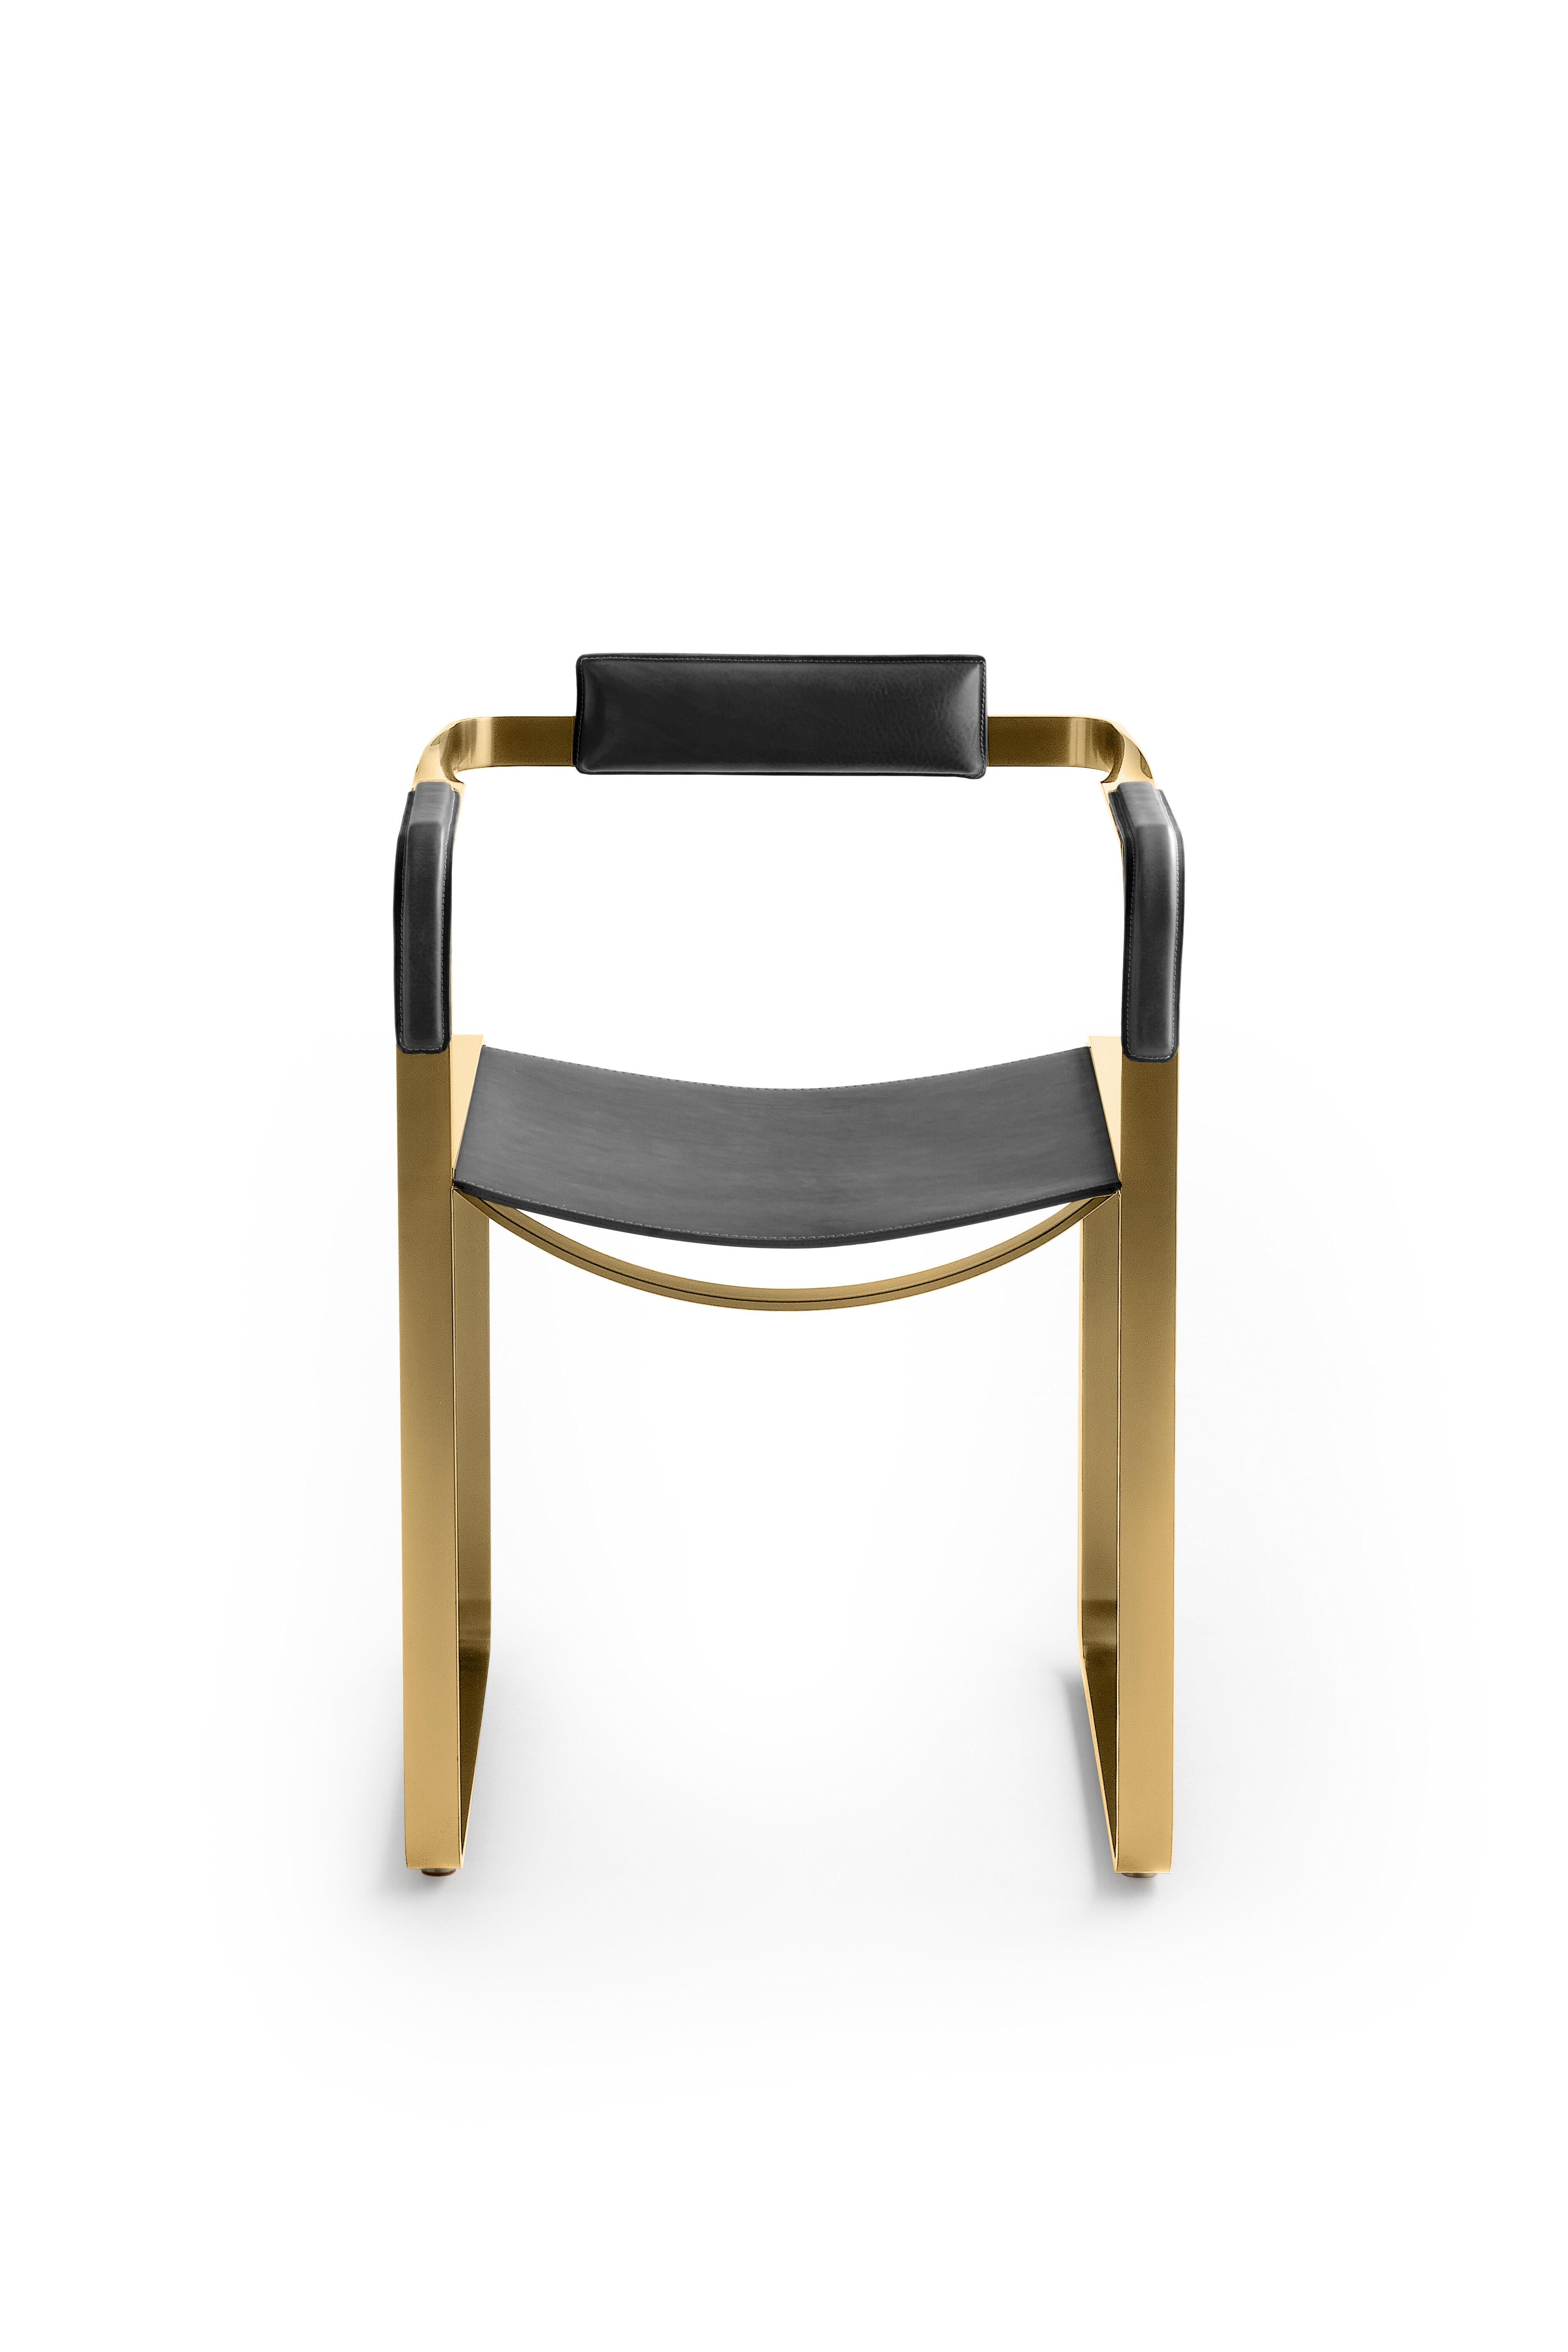 Le fauteuil contemporain Wanderlust appartient à une collection de pièces minimalistes et sereines où l'exclusivité et la précision se manifestent dans de petits détails tels que les écrous et les boulons en métal tournés à la main qui fixent les